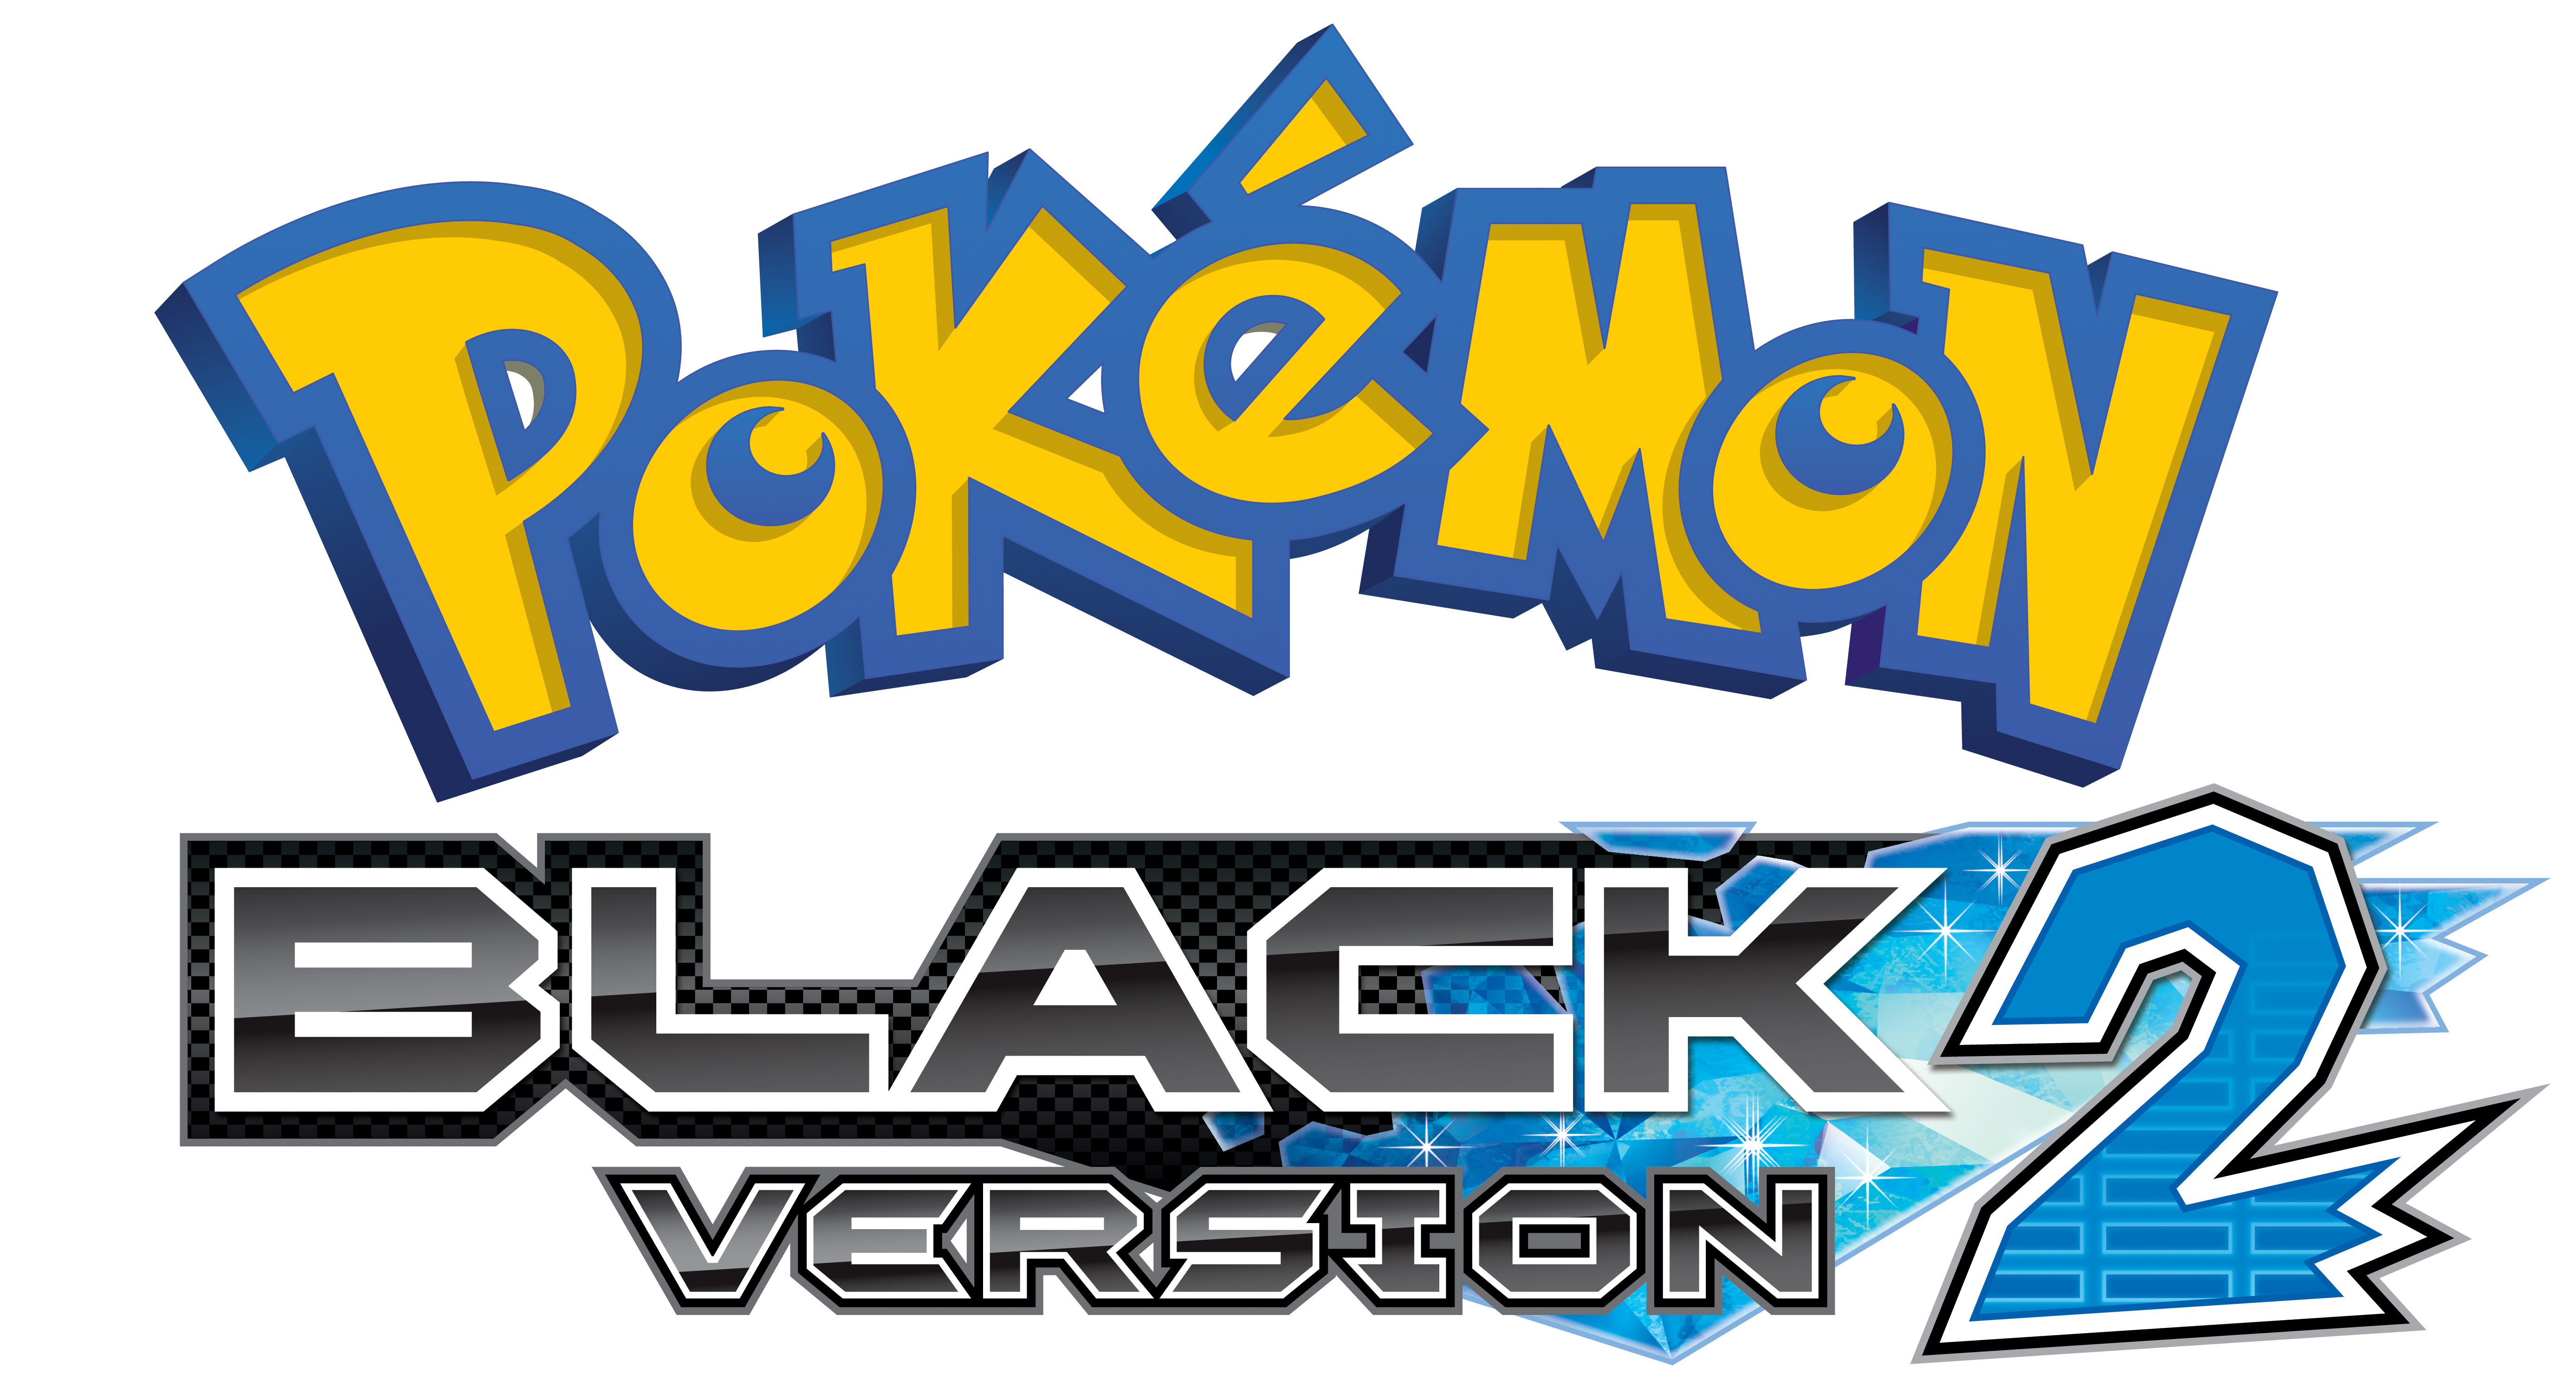 pokemon black 2 3ds rom